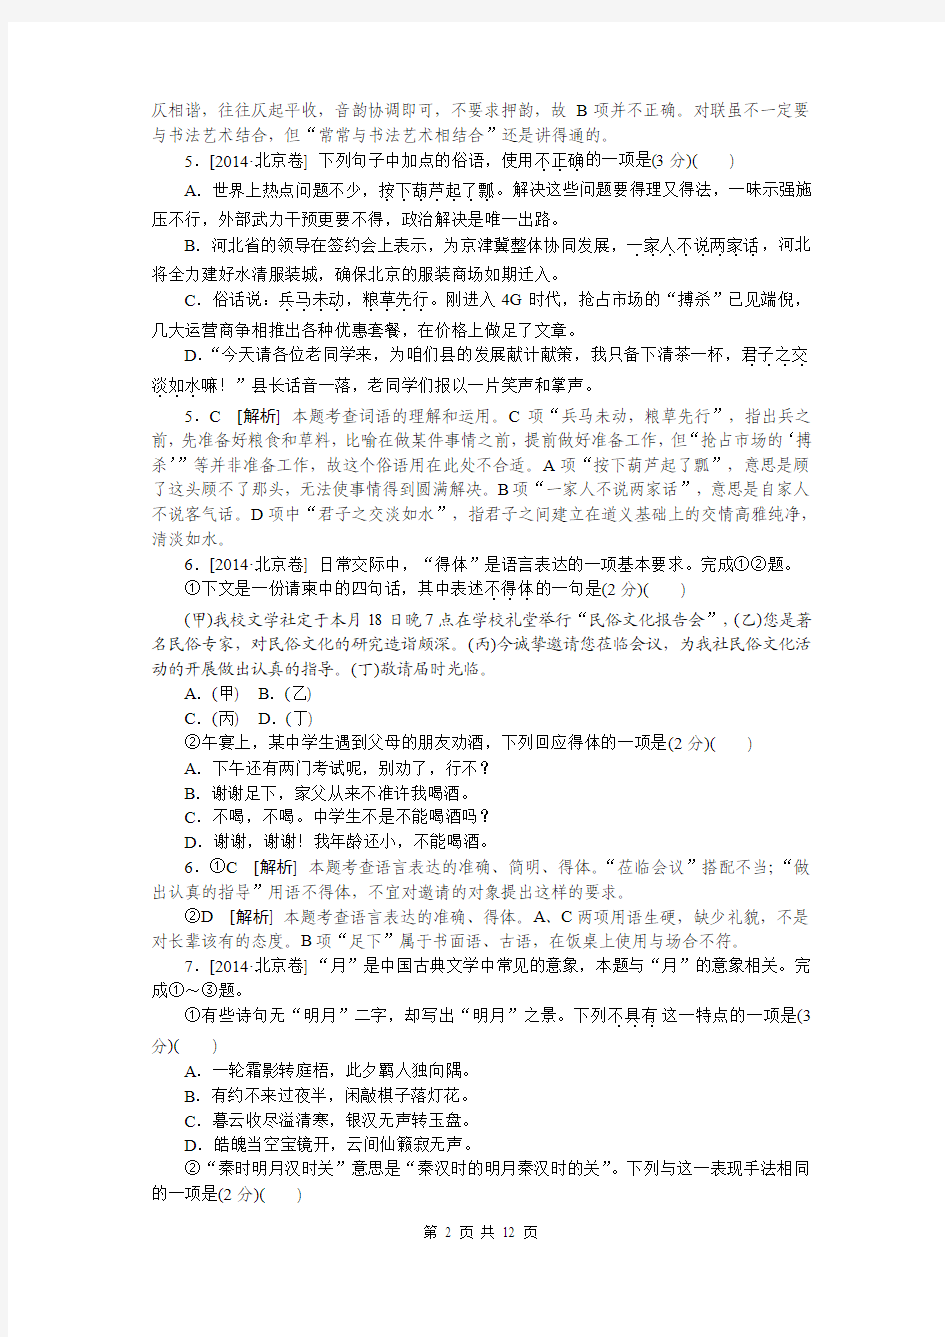 2014年高考真题——语文北京卷(逐题详解)